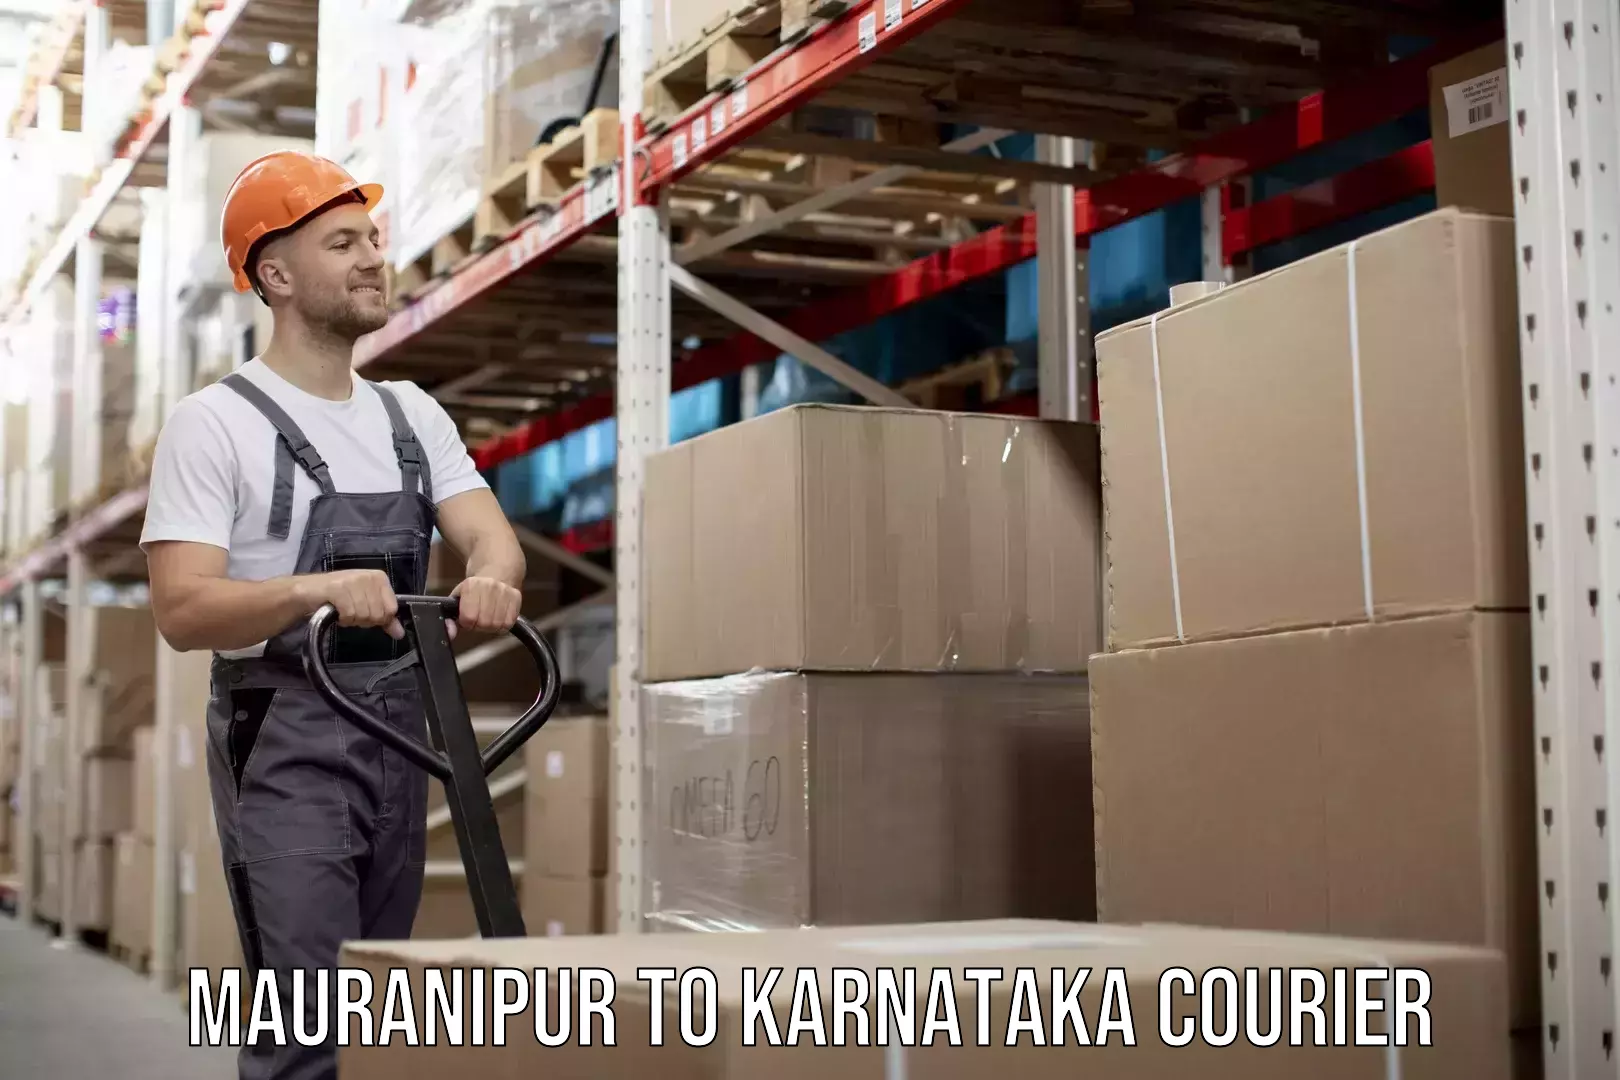 Home relocation experts Mauranipur to Karnataka